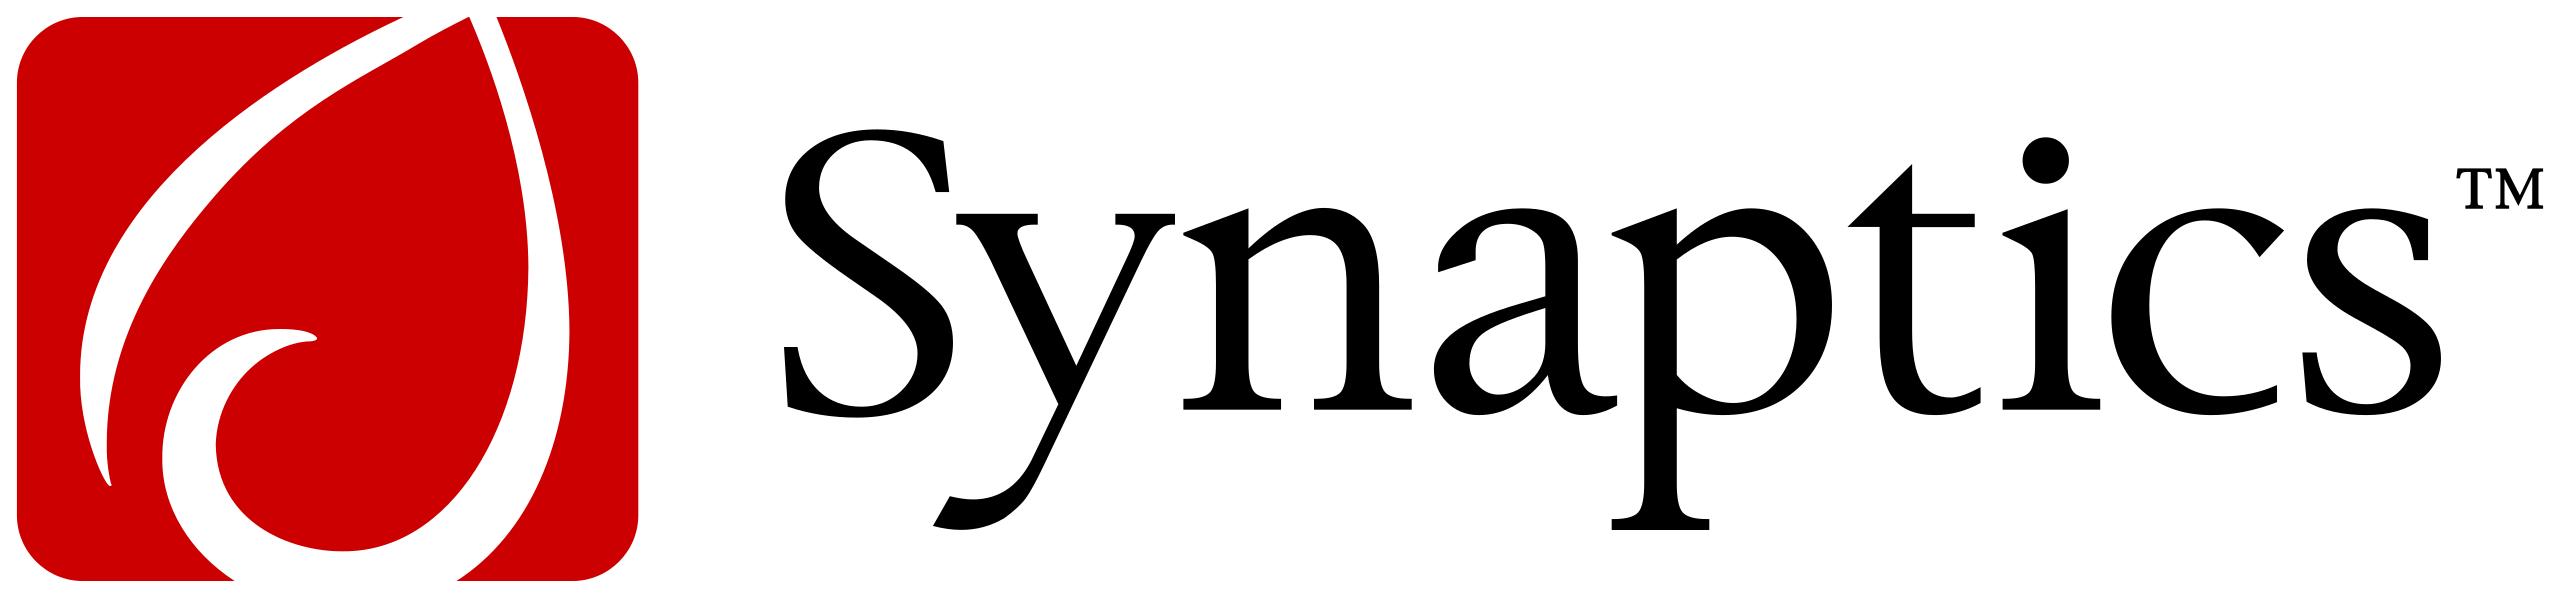 2560px-Synaptics_logo.svg